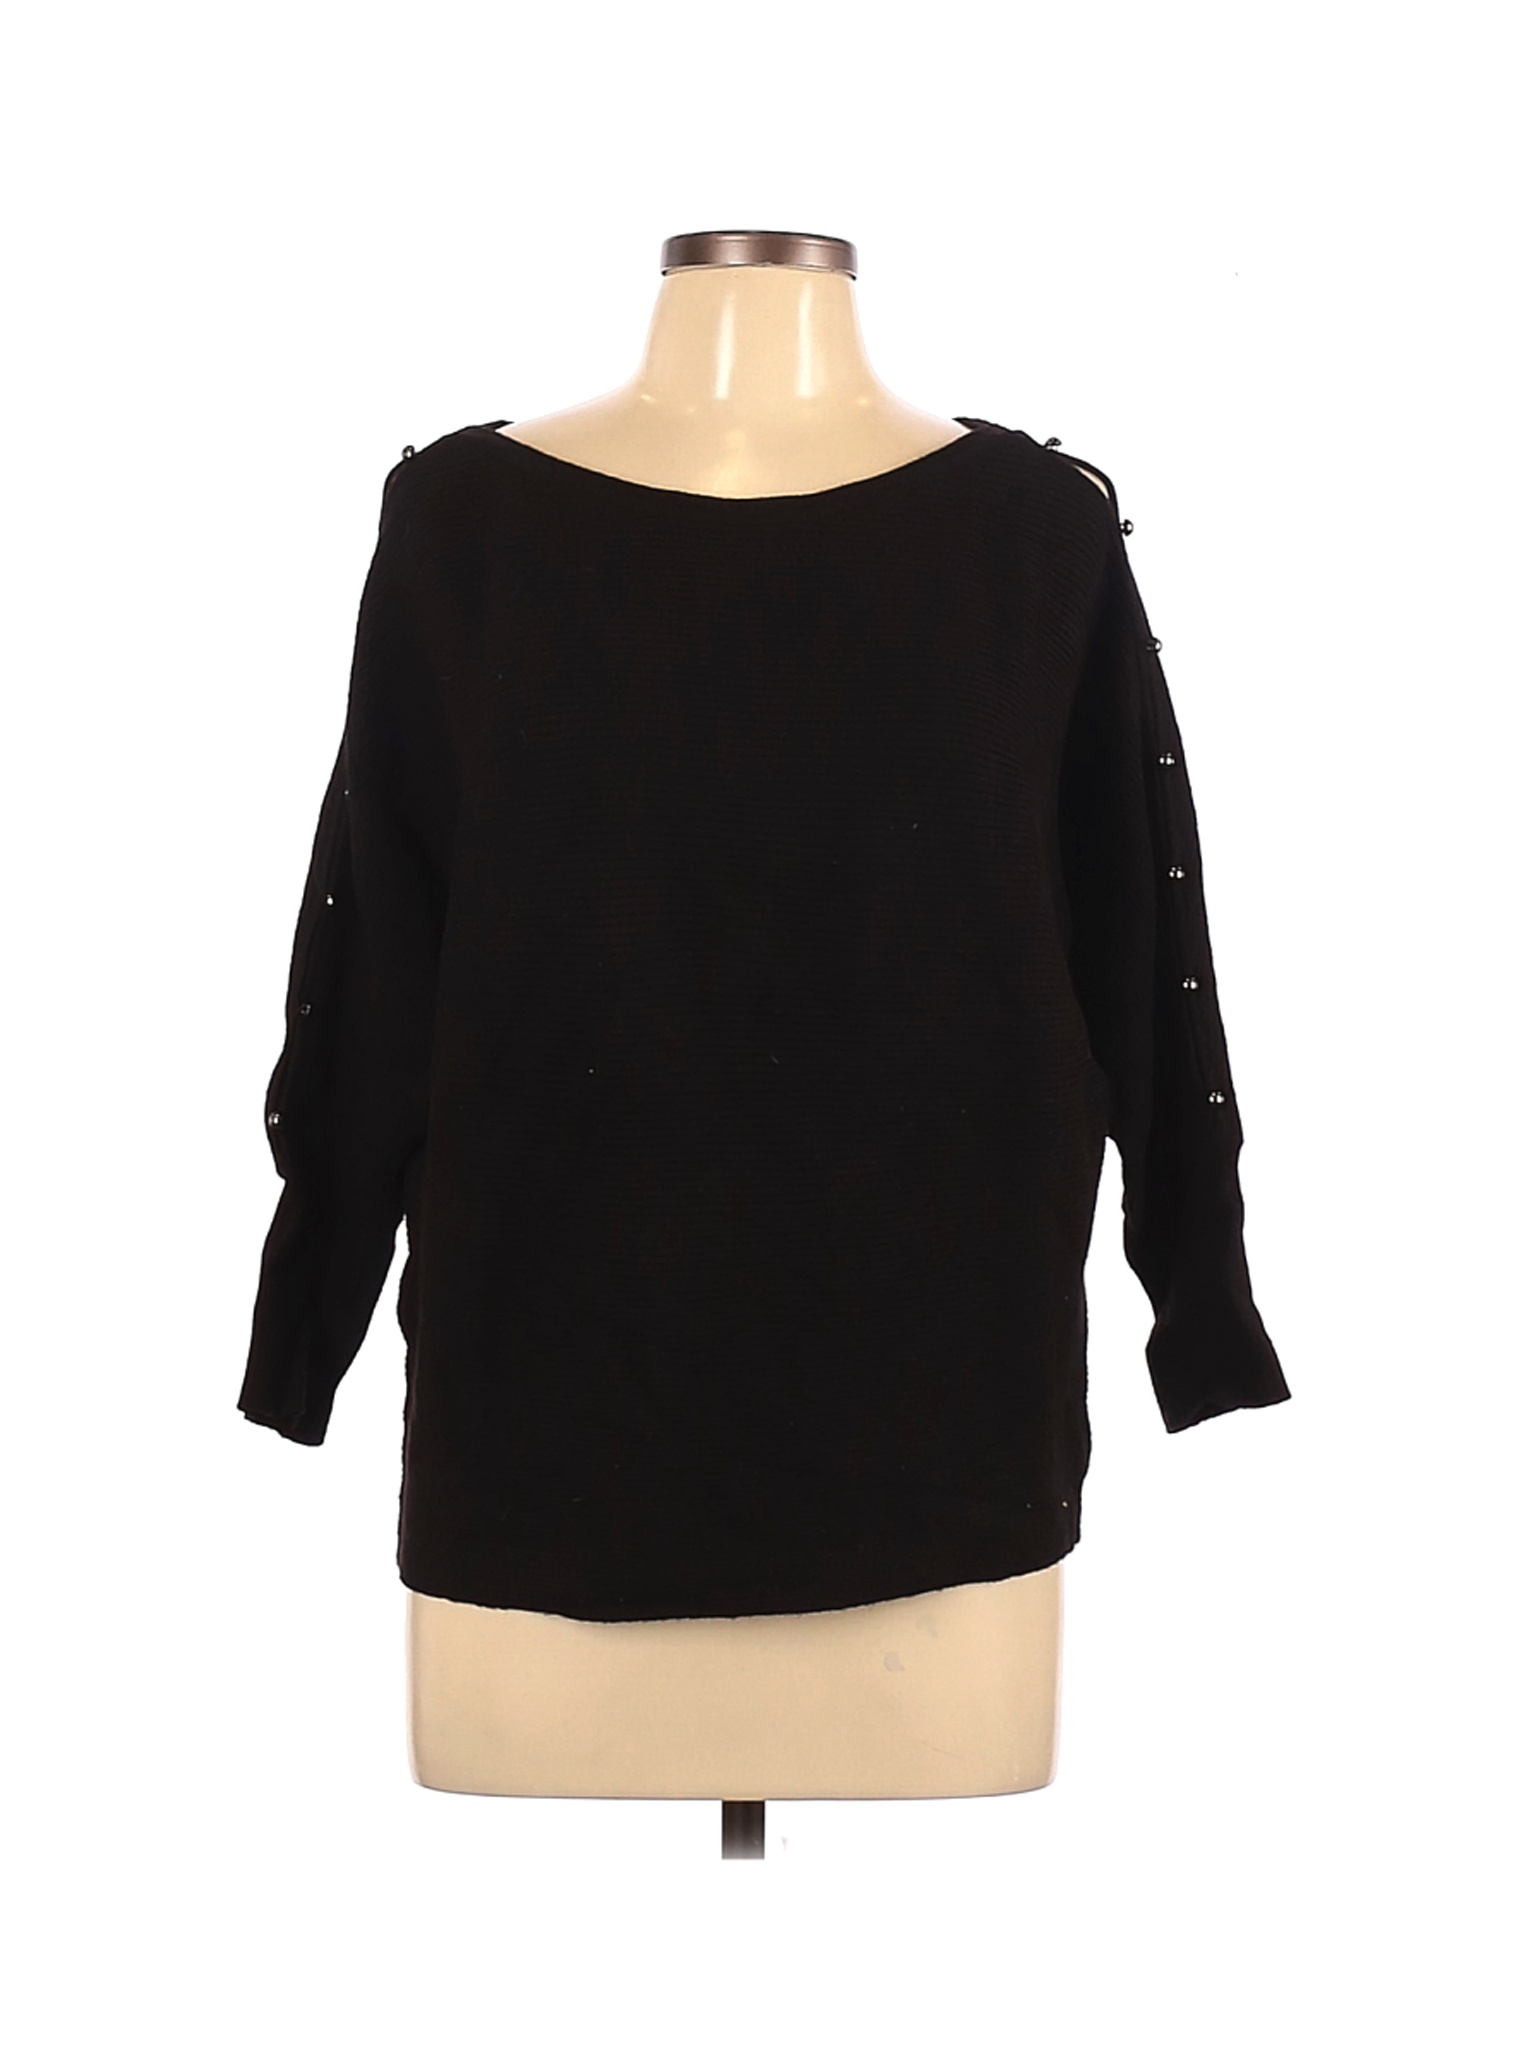 Jennifer Lopez Women Black Pullover Sweater L | eBay